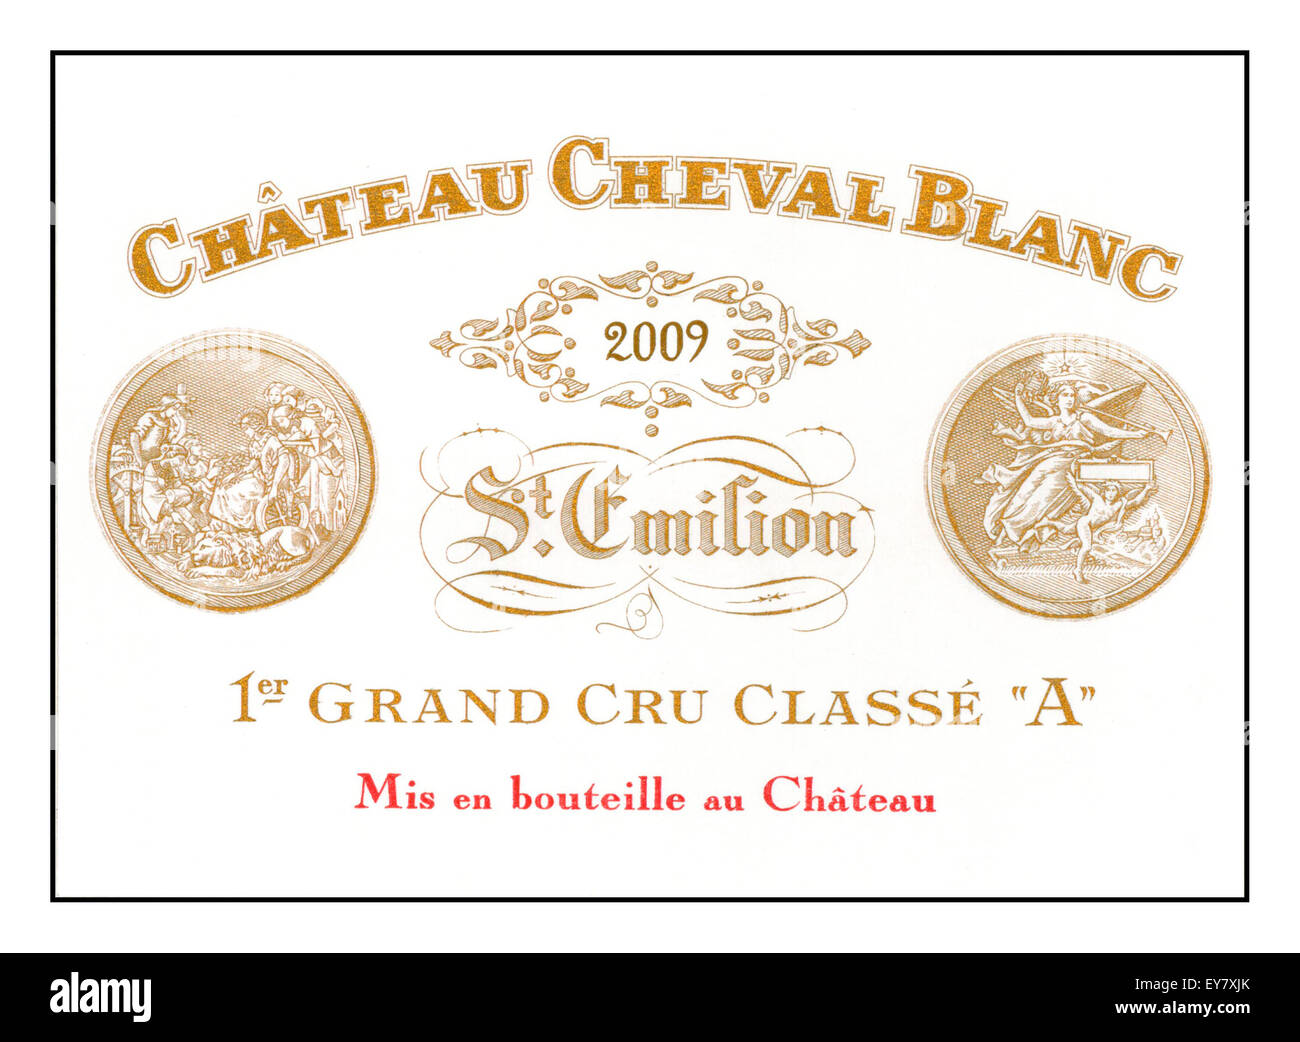 Label of 2009 Chateau Cheval Blanc Premier Grand Cru classe St Emilion wine Bordeaux France Stock Photo